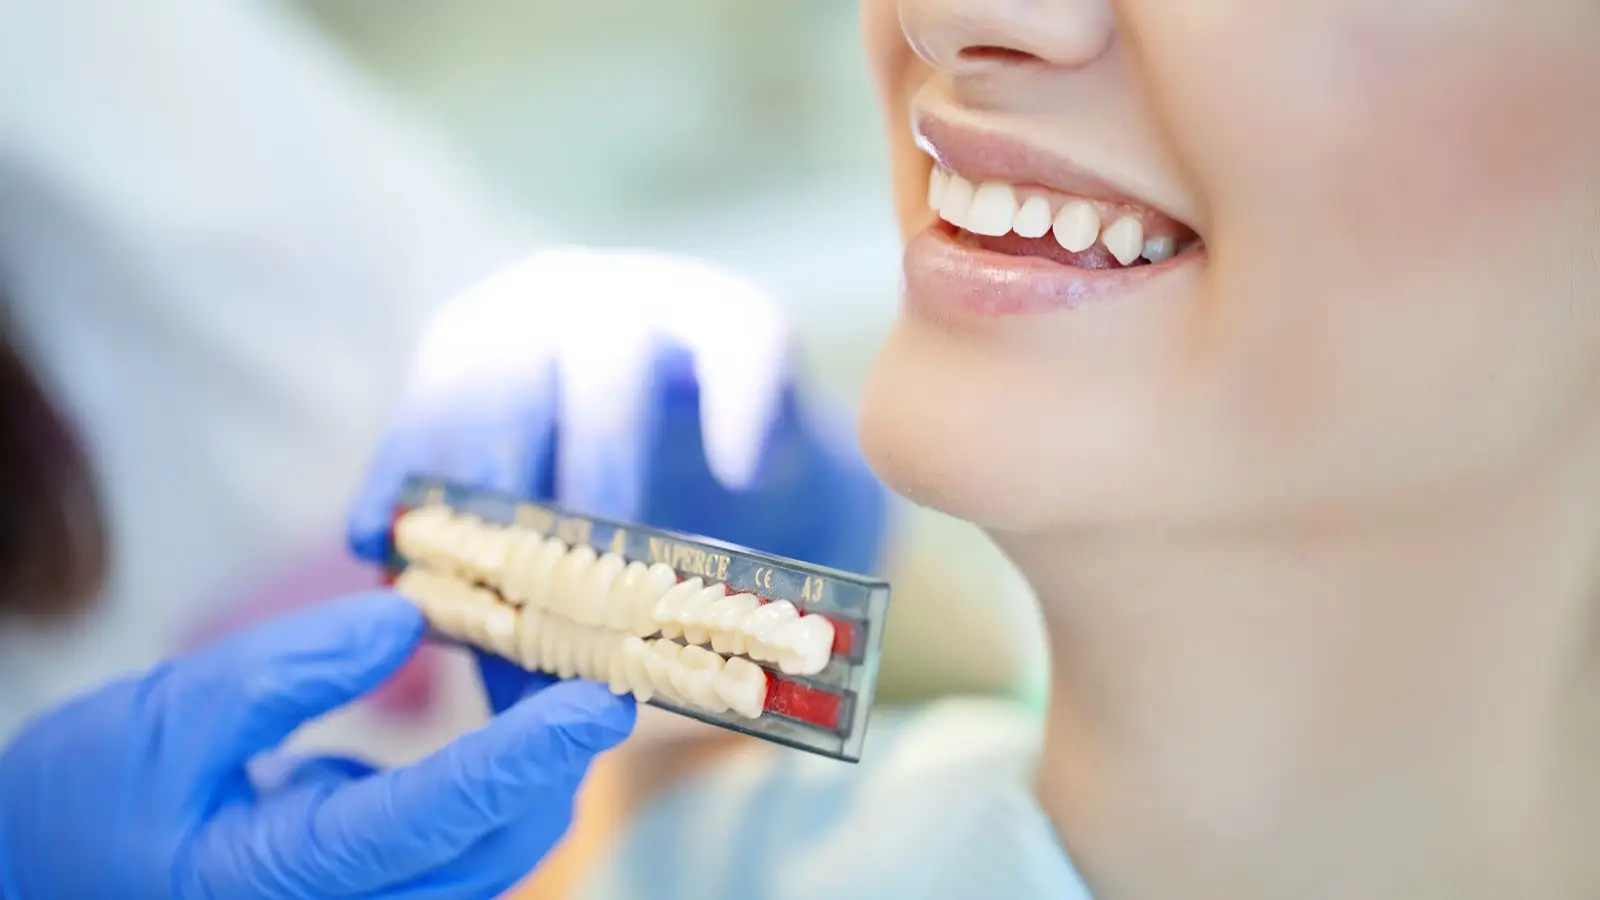 ما هي جسور الأسنان؟ وما هي عيوبها ومميزاتها وطرق العناية بها؟